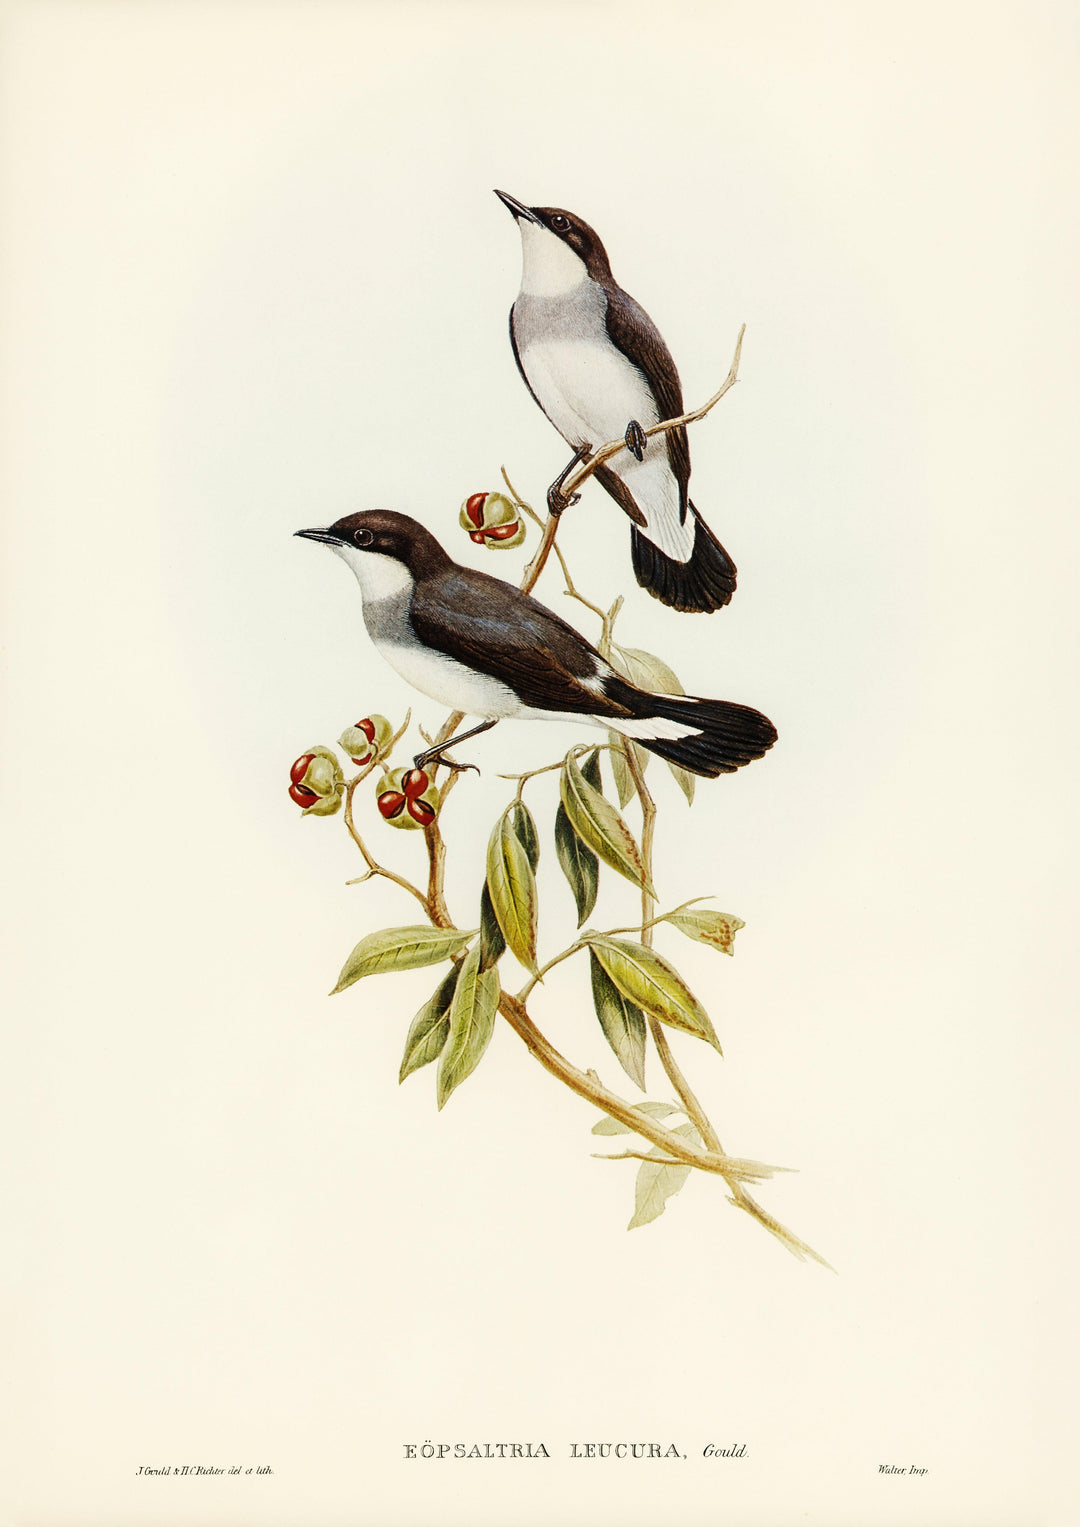 Seekehlchen (Eopsaltria leucura), illustriert von Elizabeth Gould - Printree.ch Aquarell, farbenfroh, Malerei, Ornithologie, Poster, Singvogel, vintage, Vogel, wildes Leben, wildlife